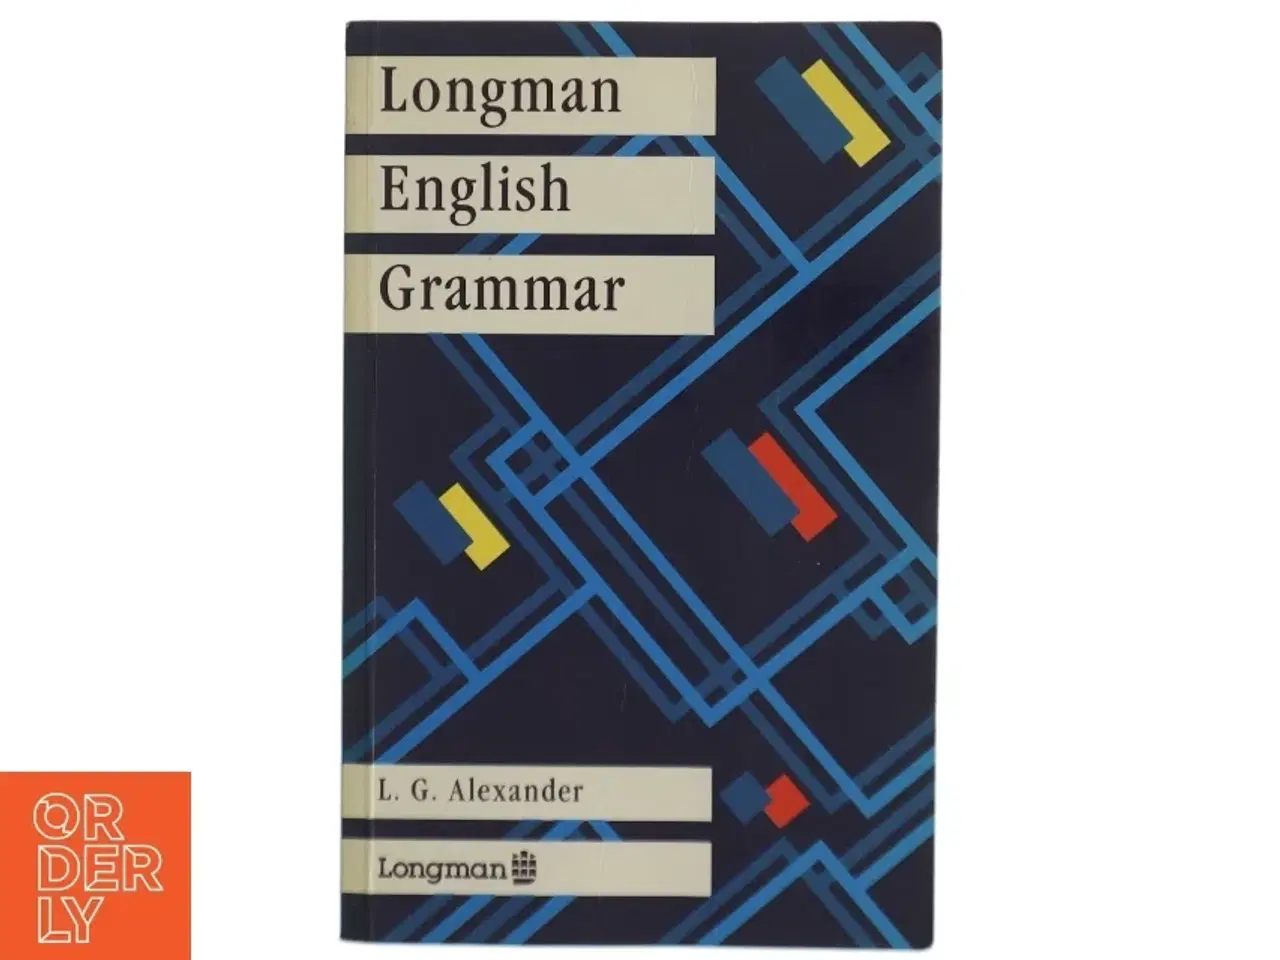 Billede 1 - Longman English grammar af L.G. Alexander (Bog)